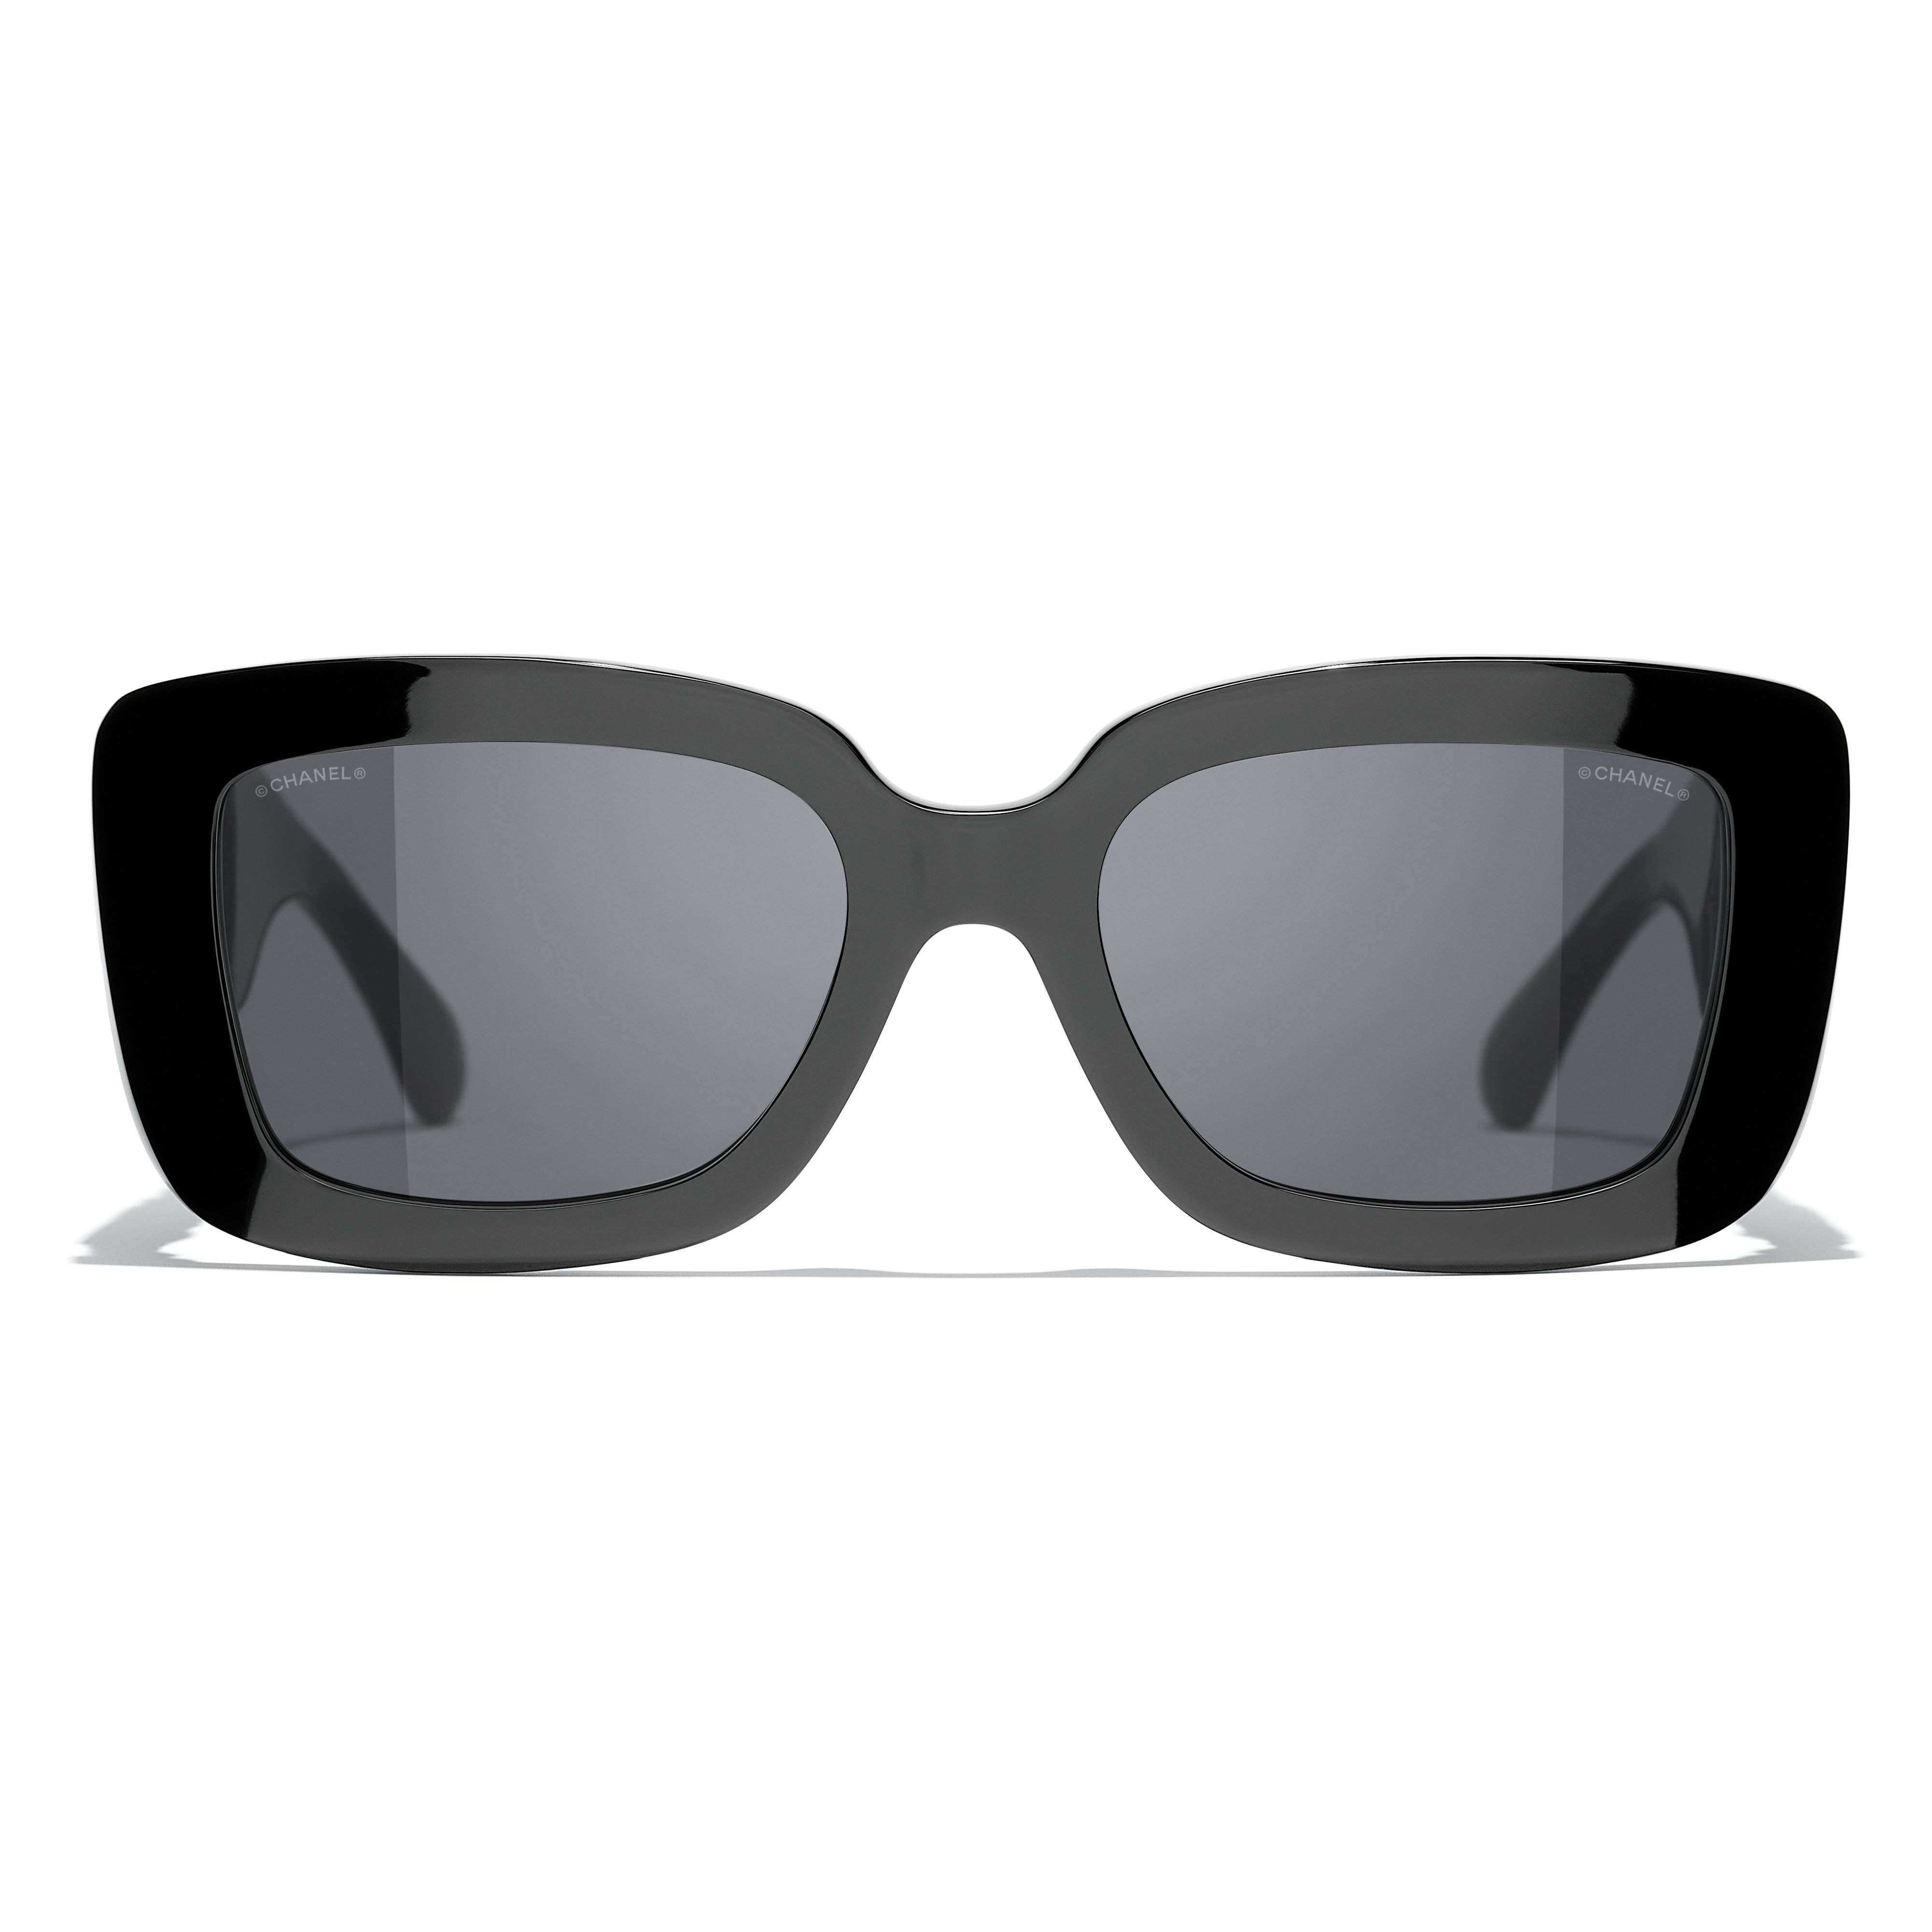 Sunglasses Chanel CH5458 C622T8 55-17 Black in stock, Price 254,17 €